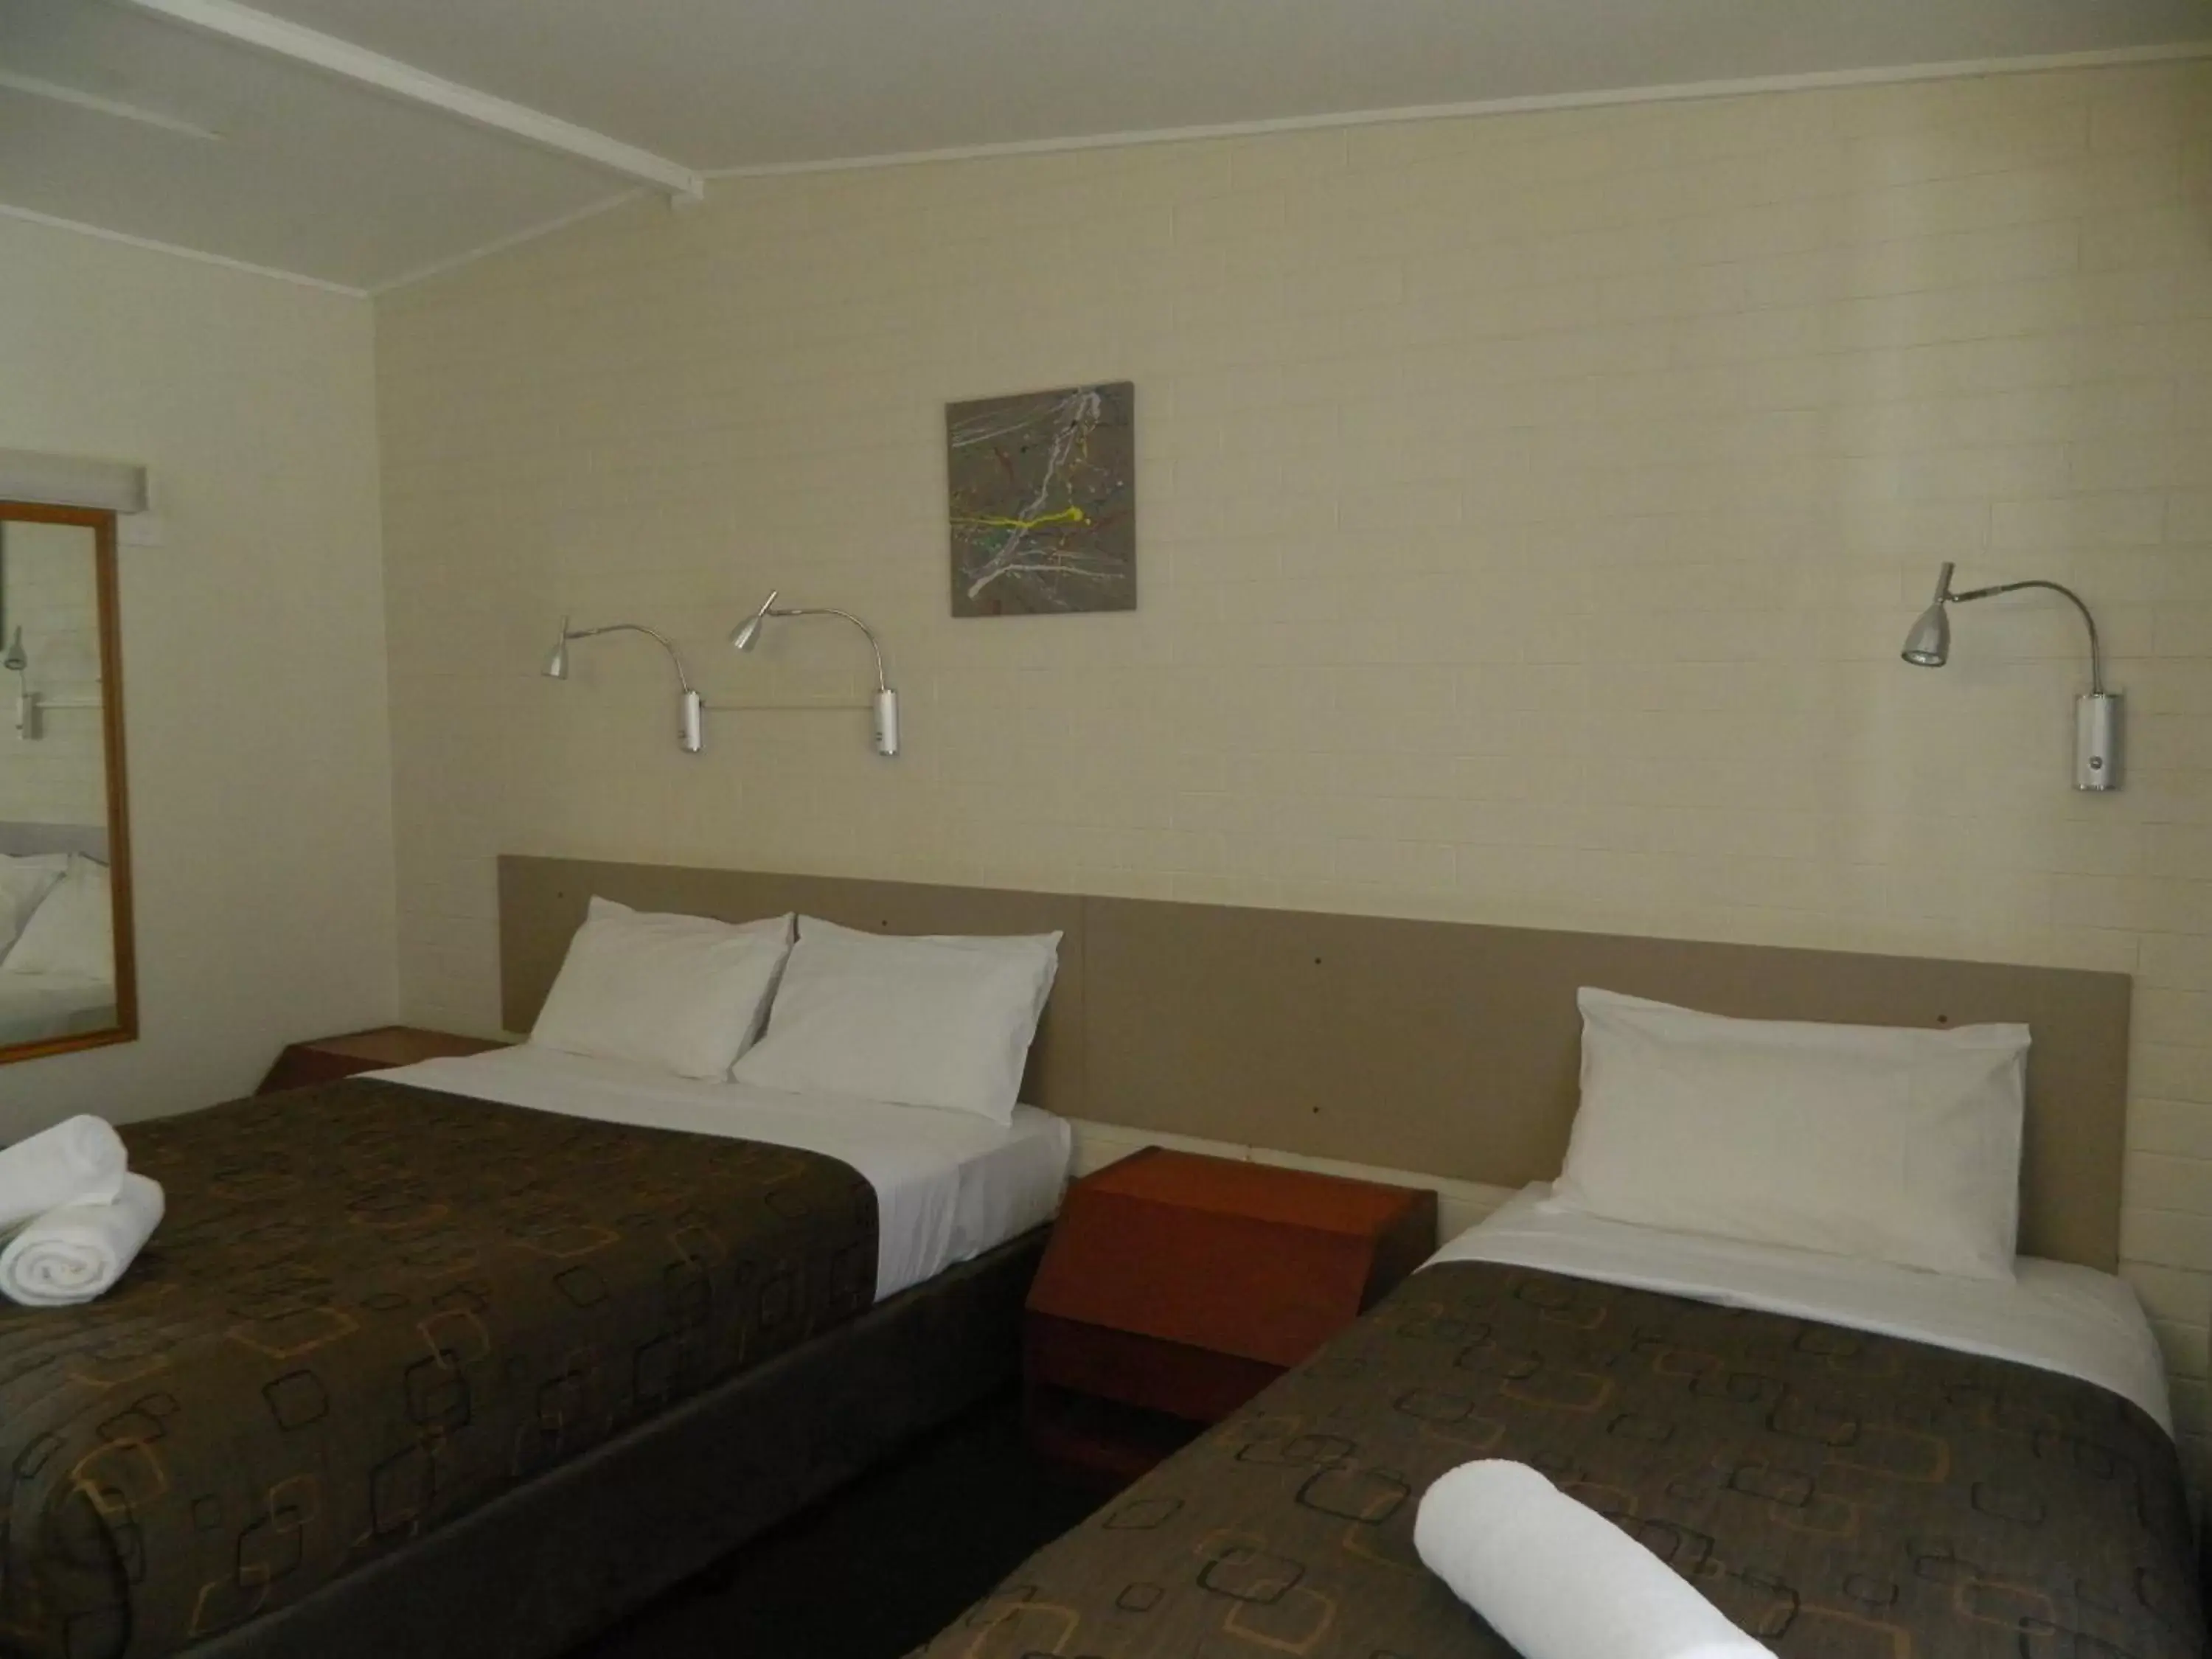 Bedroom, Bed in Coachman Motel